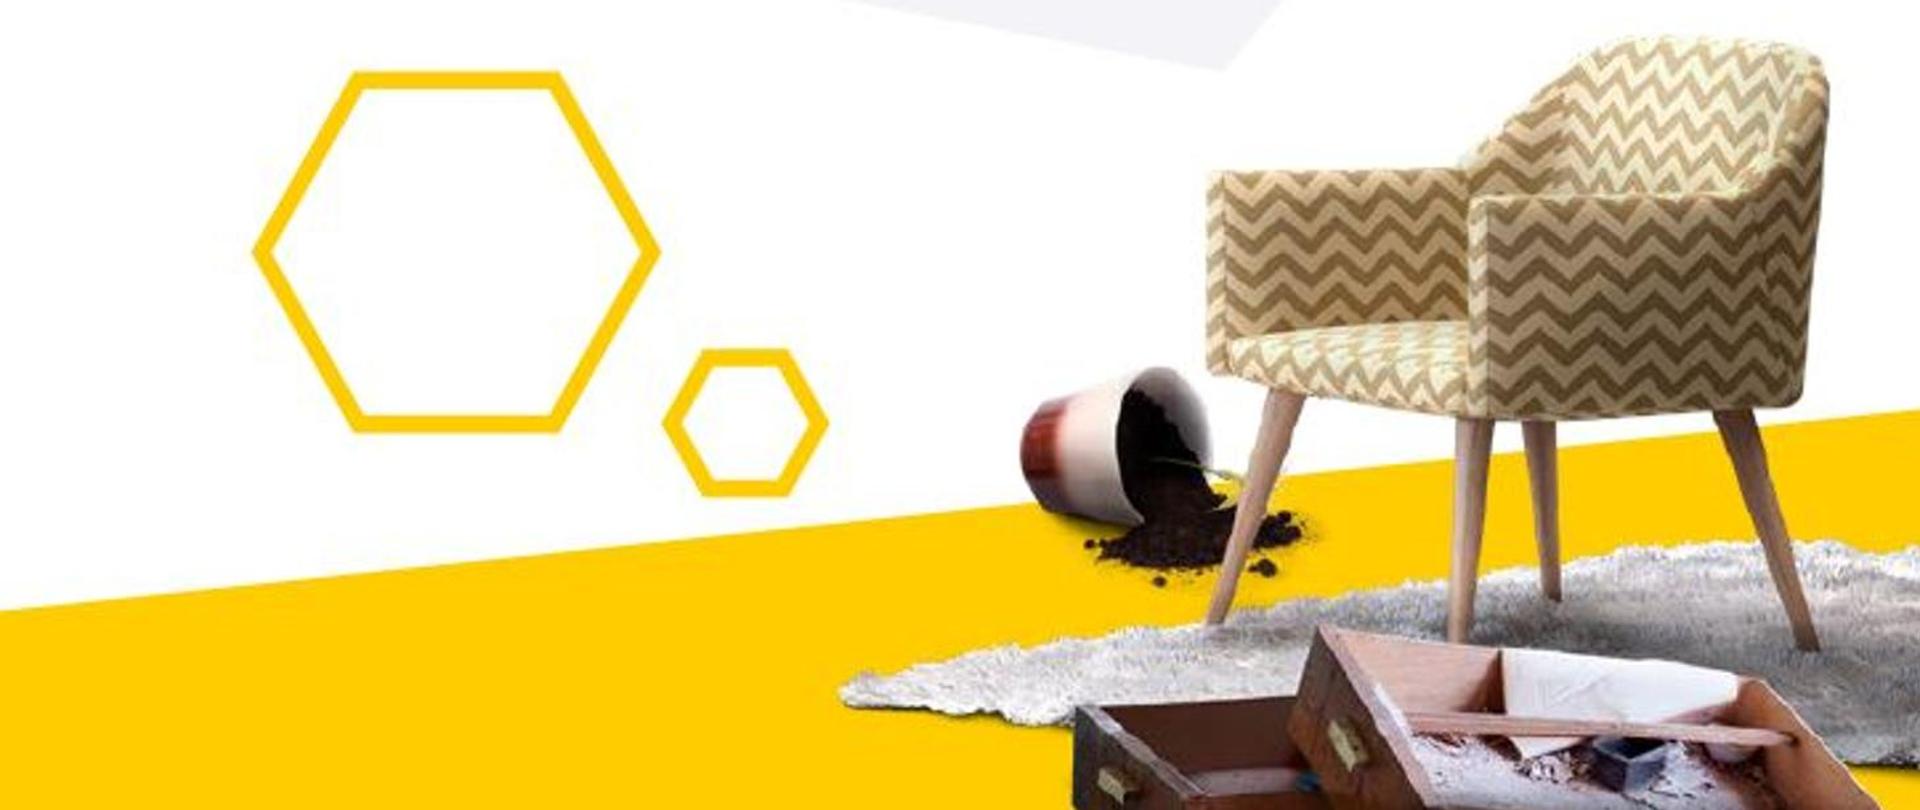 Grafika przedstawia na biało- żółtym tle z prawej strony krzesło na dywanie, zbitą doniczkę z ziemią oraz drewniane przewócone tacki